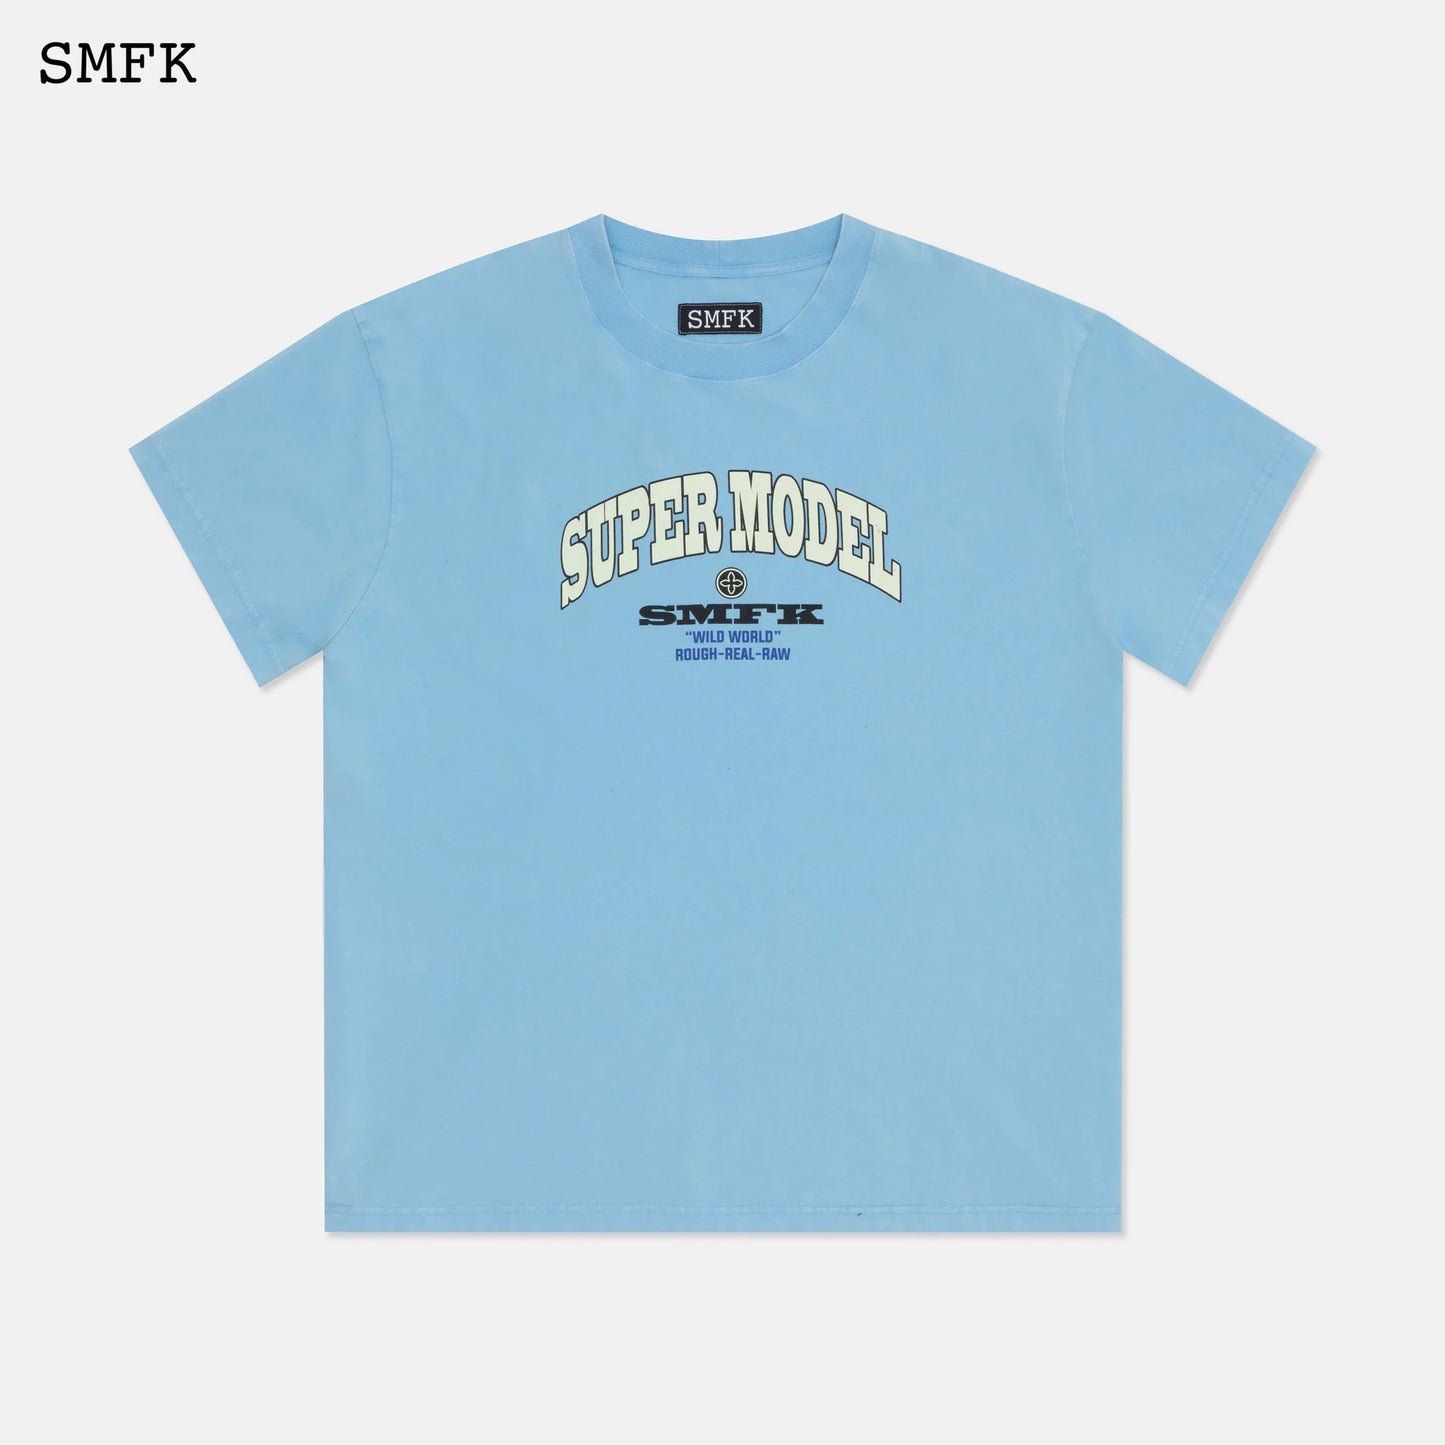 Oversized Super Model Blue T-shirt